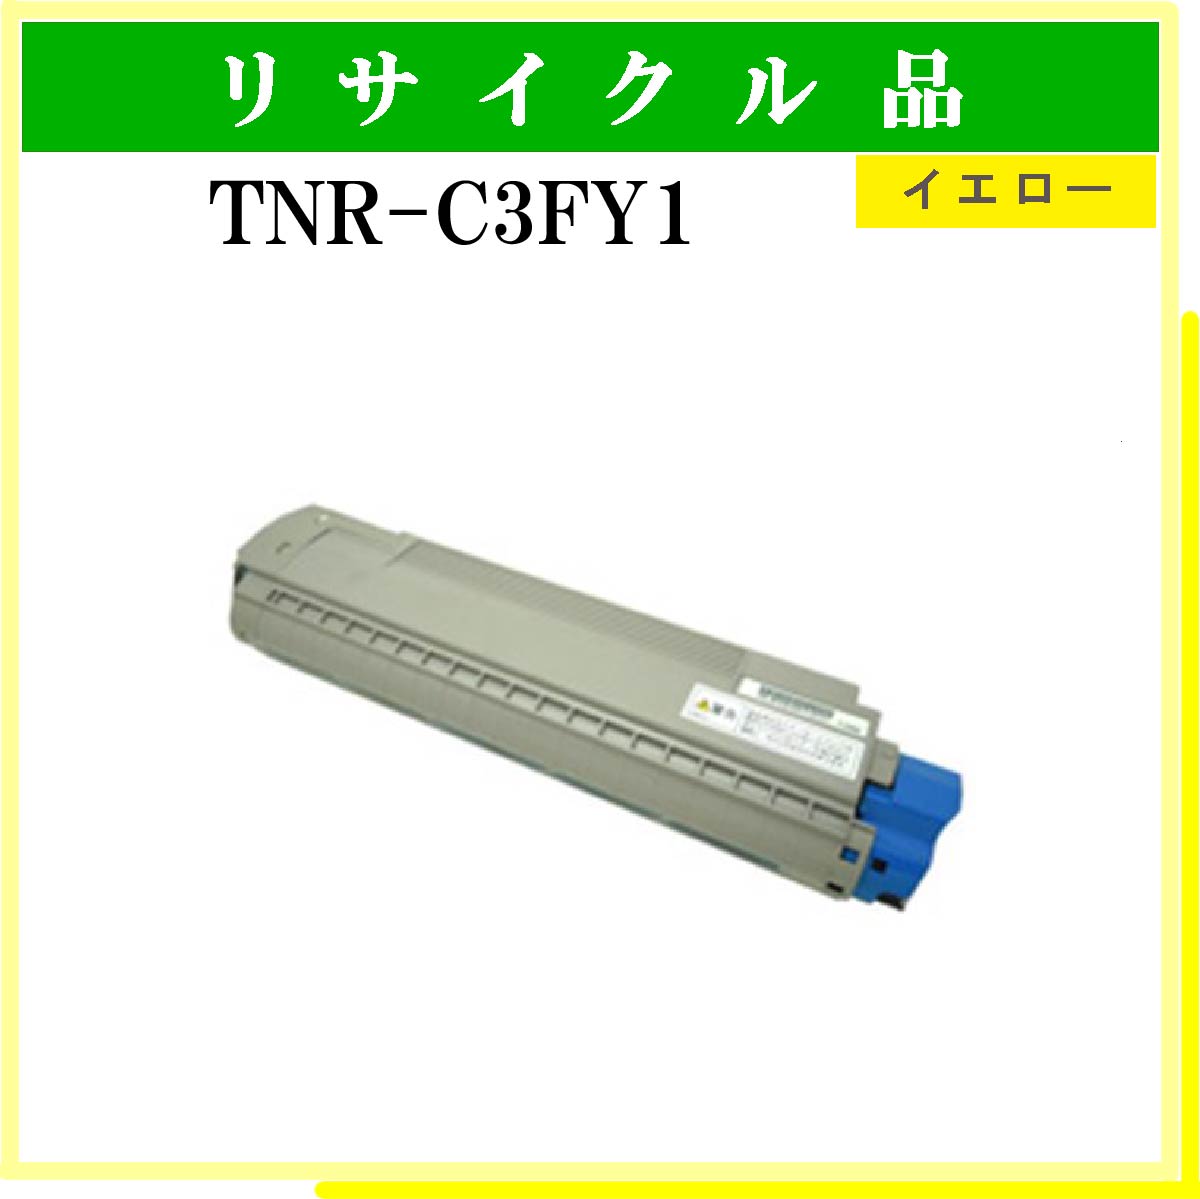 TNR-C3FY1